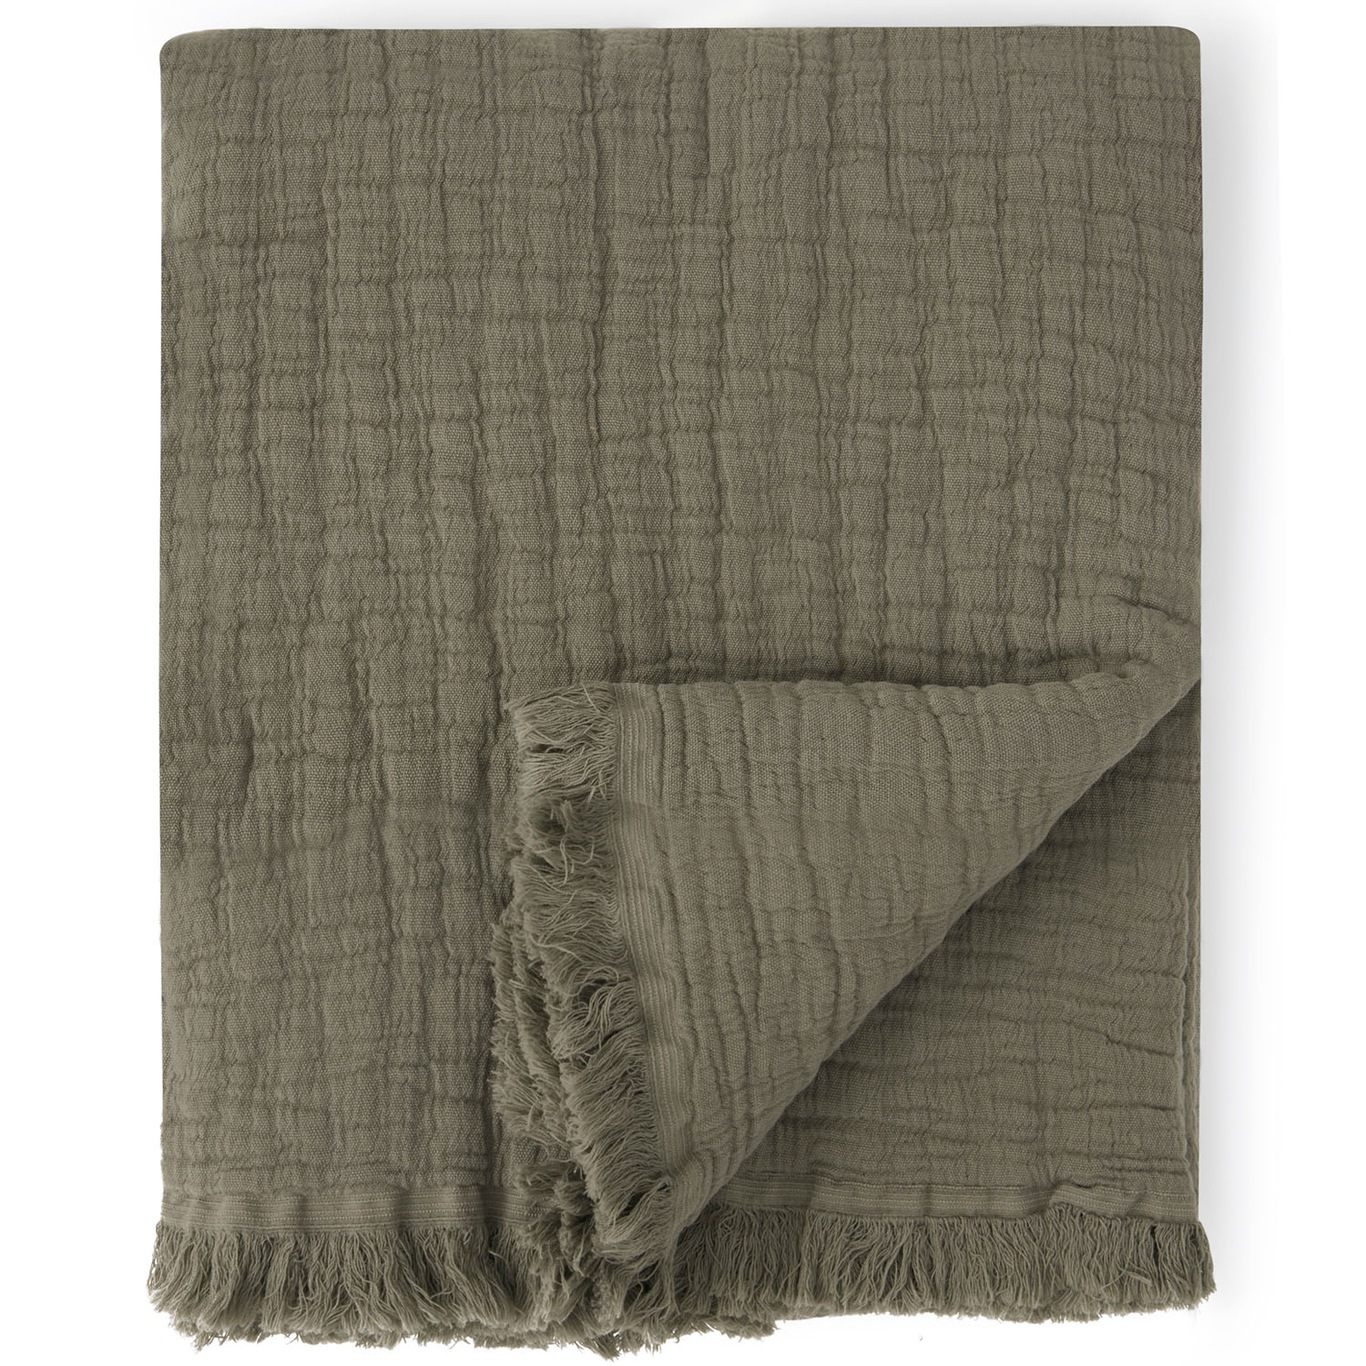 Geranium Blanket, 110x110 cm